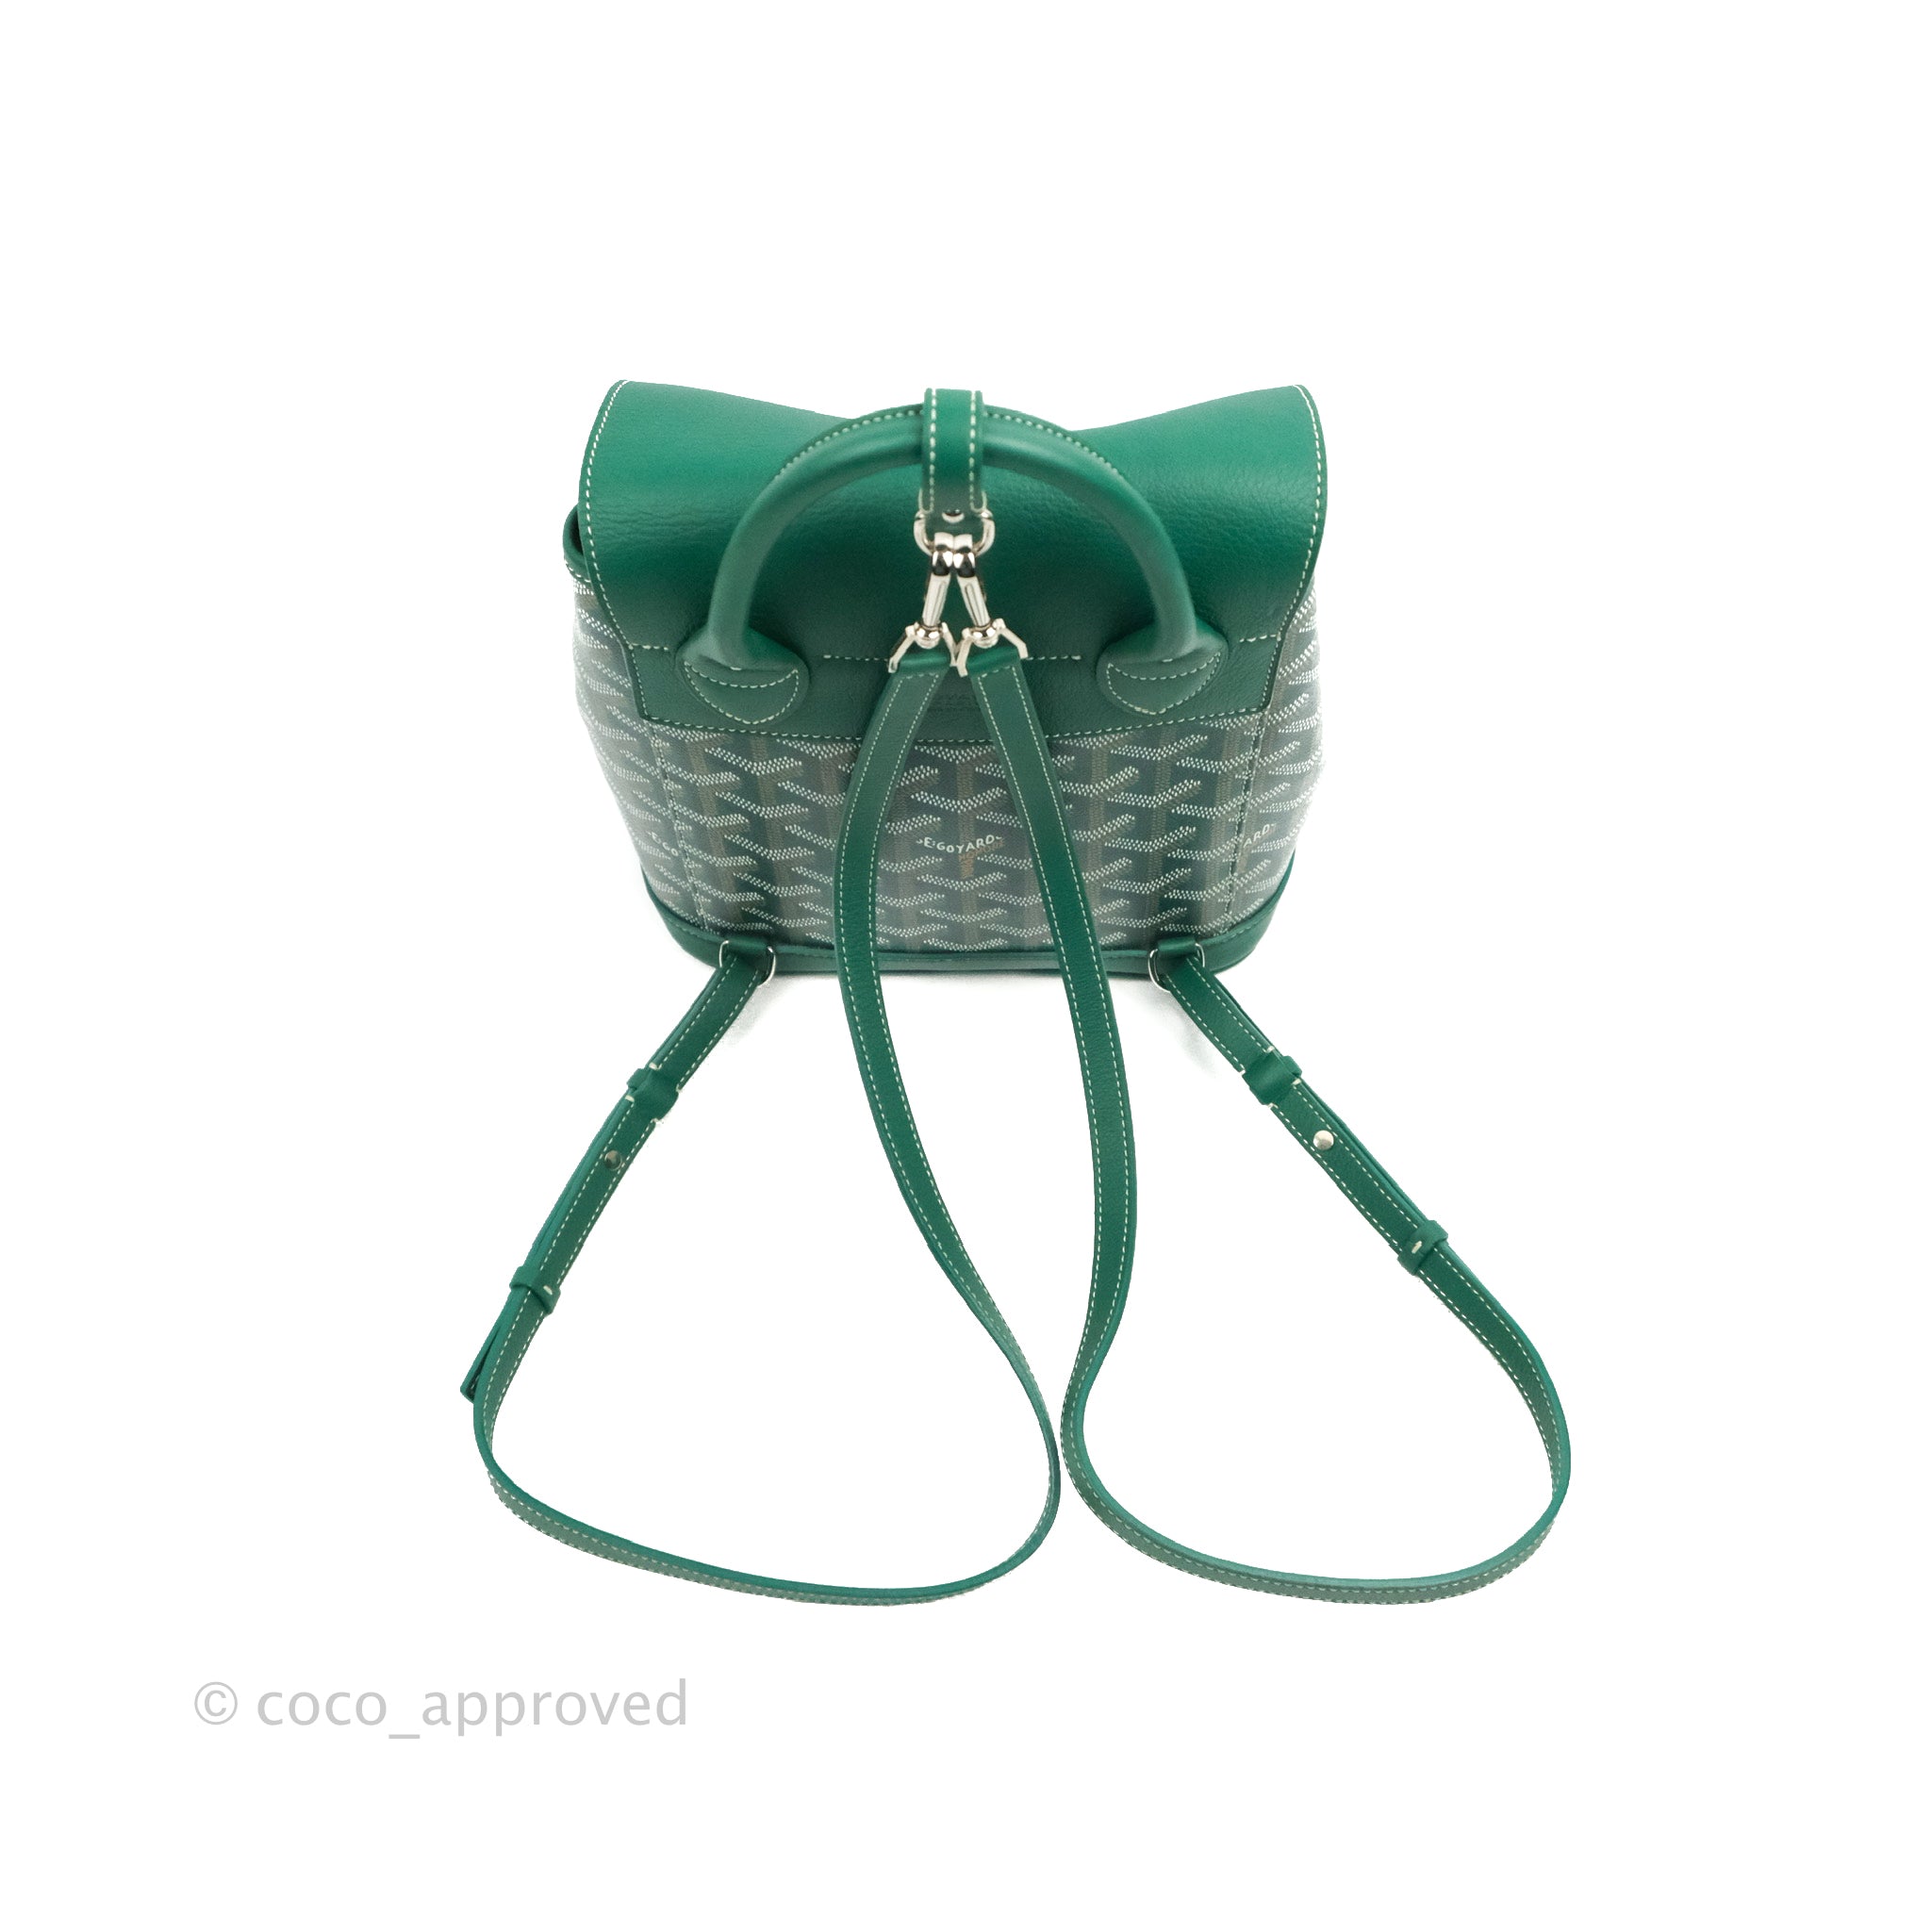 Goyard Alpin Mini II Backpack – Bag Papi